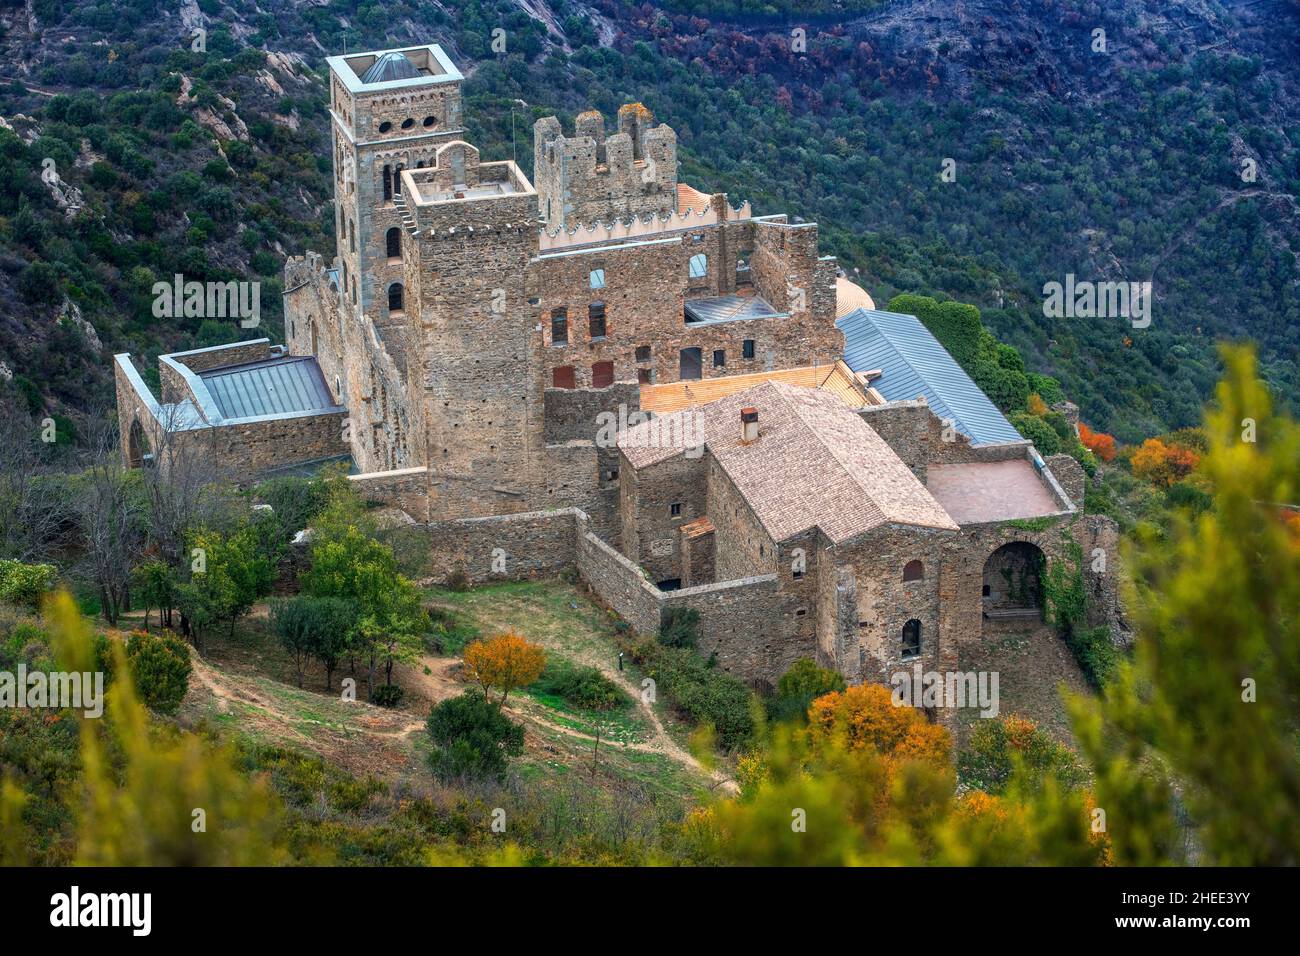 Sant Pere de Rodes mit seinem Dorf im Tal. Hoch in den Bergen schwebt dieses ehemalige Benediktinerkloster, das nun als Museum restauriert wurde Stockfoto